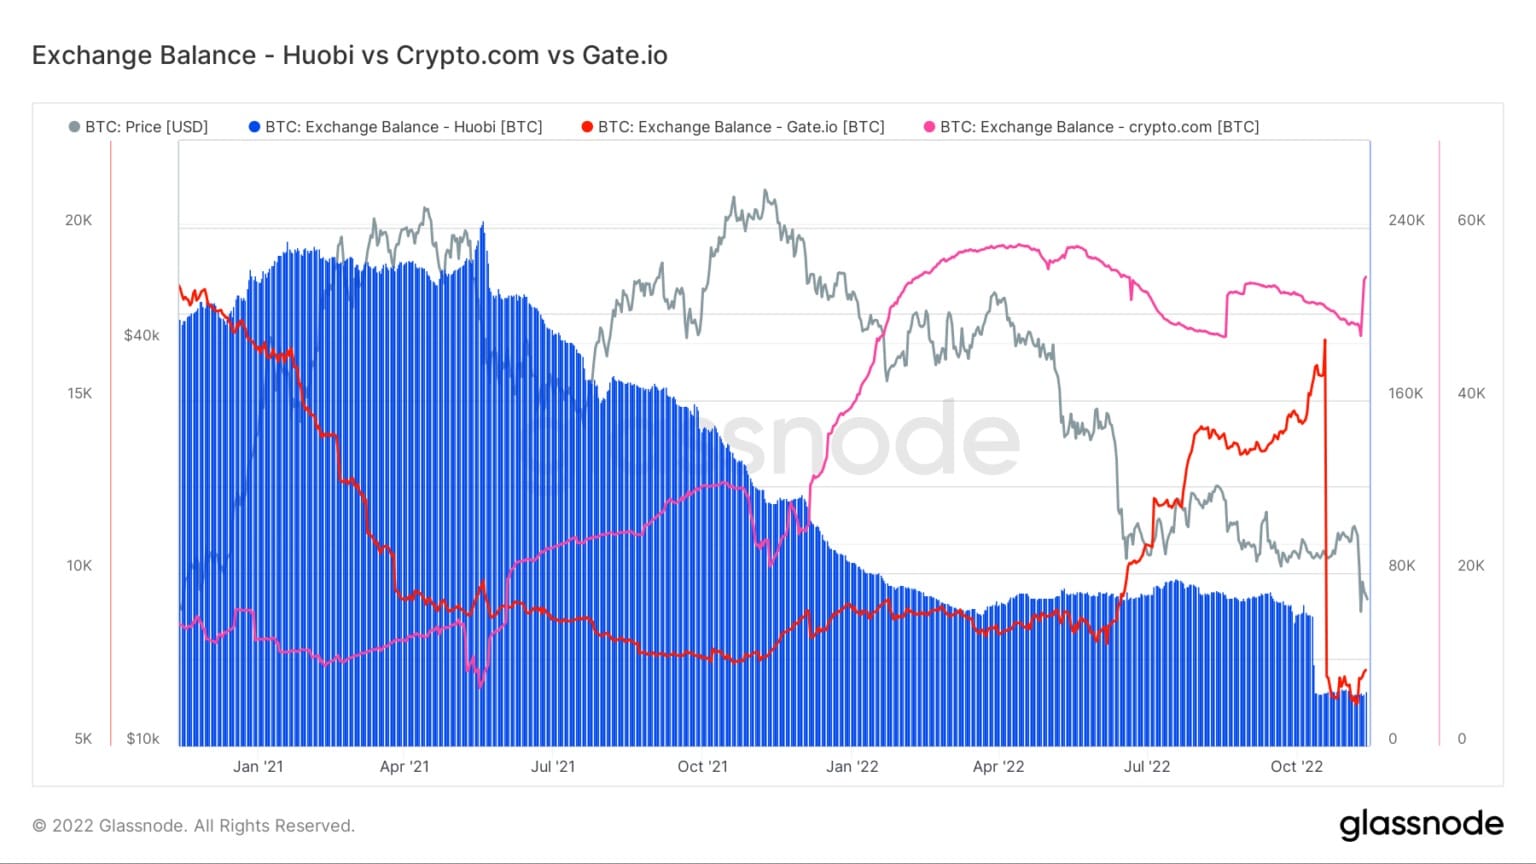 Gráfico que muestra los saldos de Bitcoin en Huobi, Crypto.com y Gate.io desde enero de 2021 hasta noviembre de 2022 (Fuente: Glassnode)